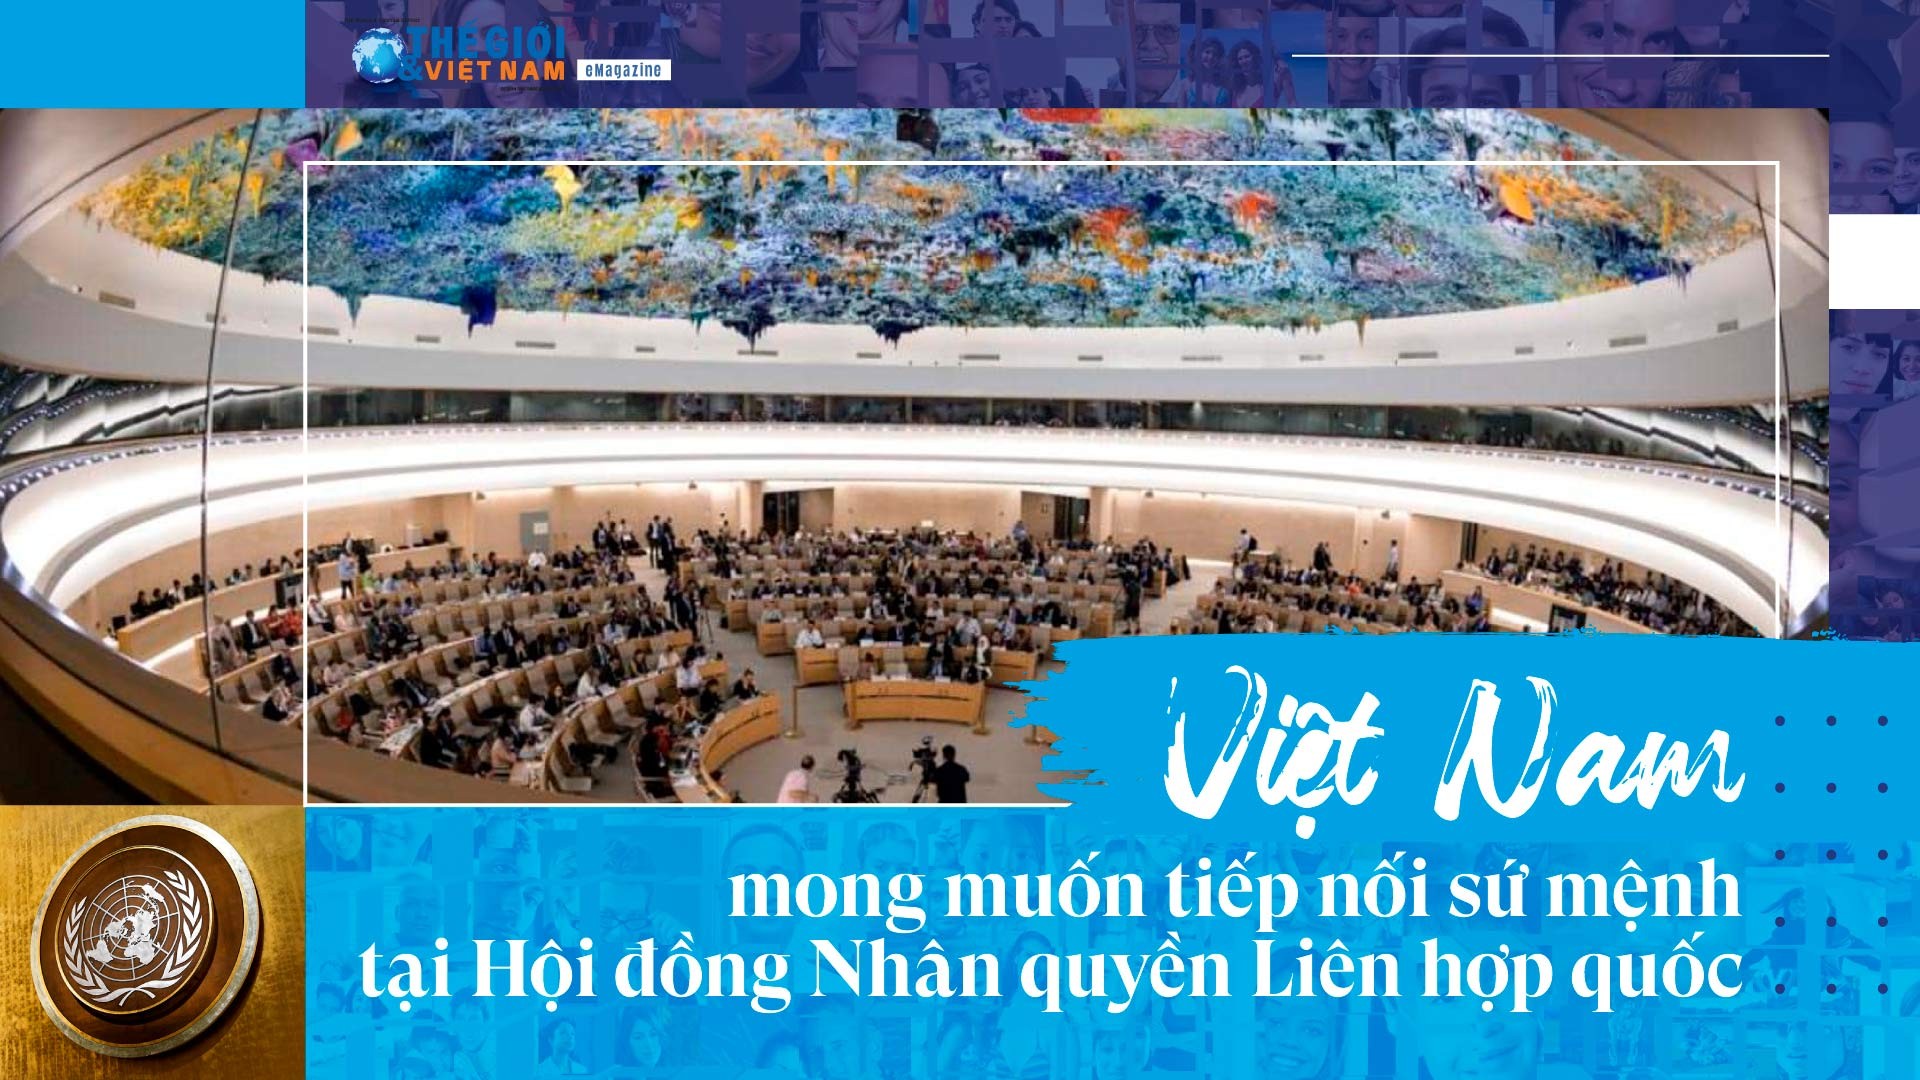 Việt Nam mong muốn tiếp nối sứ mệnh tại Hội đồng Nhân quyền Liên hợp quốc